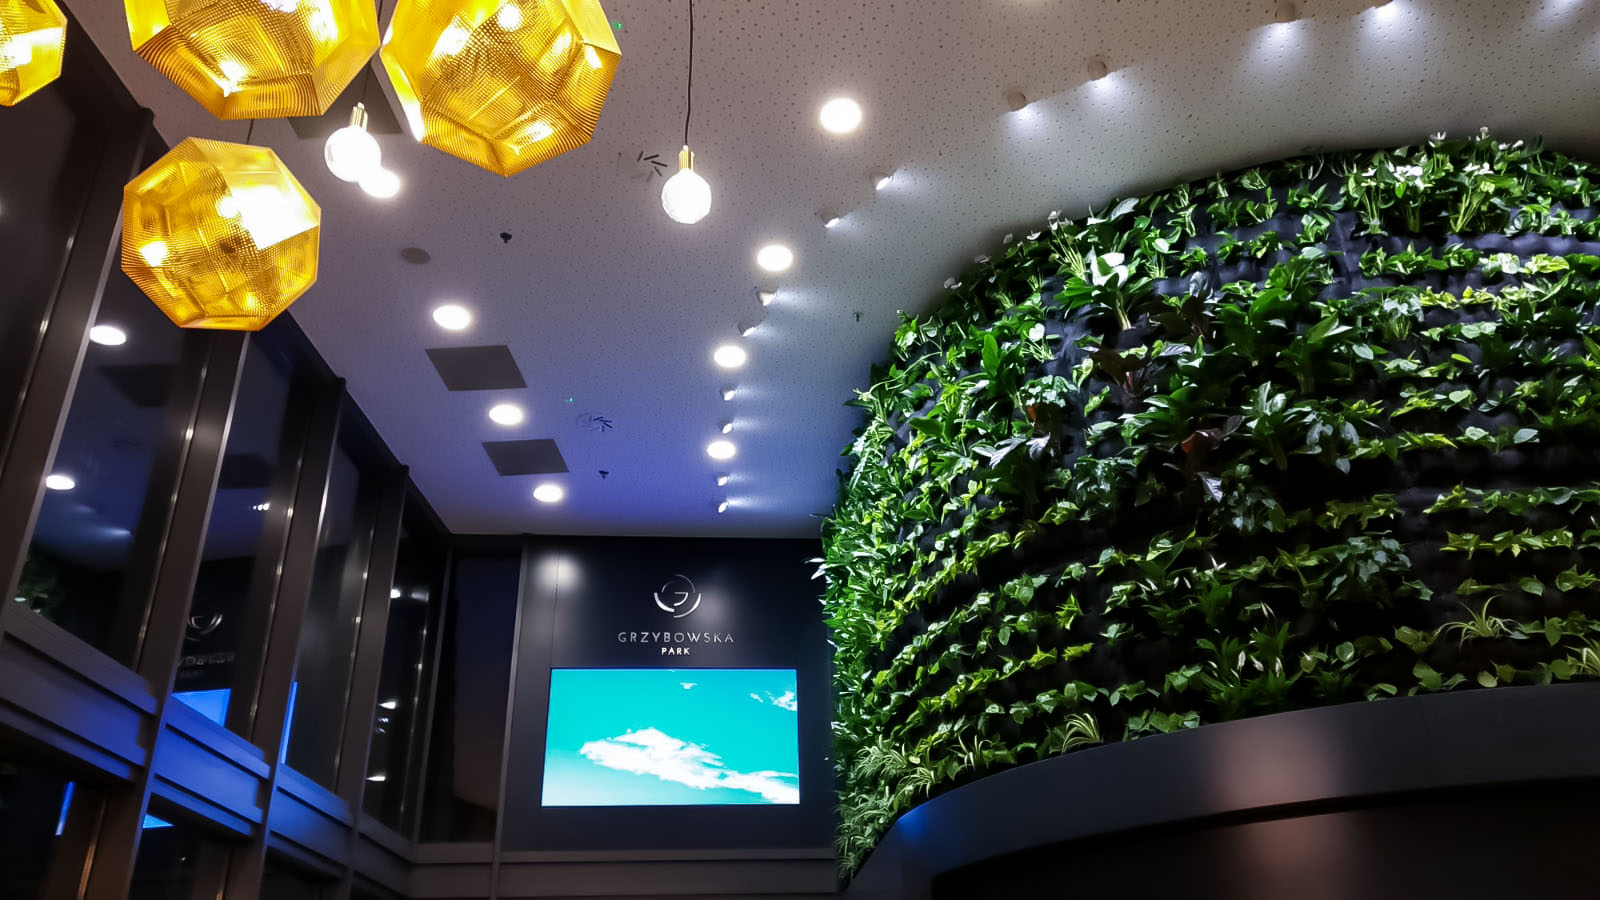 Ekran LED INDOOR zainstalowany we wnętrzu biurowca Grzybowska Park w Warszawie